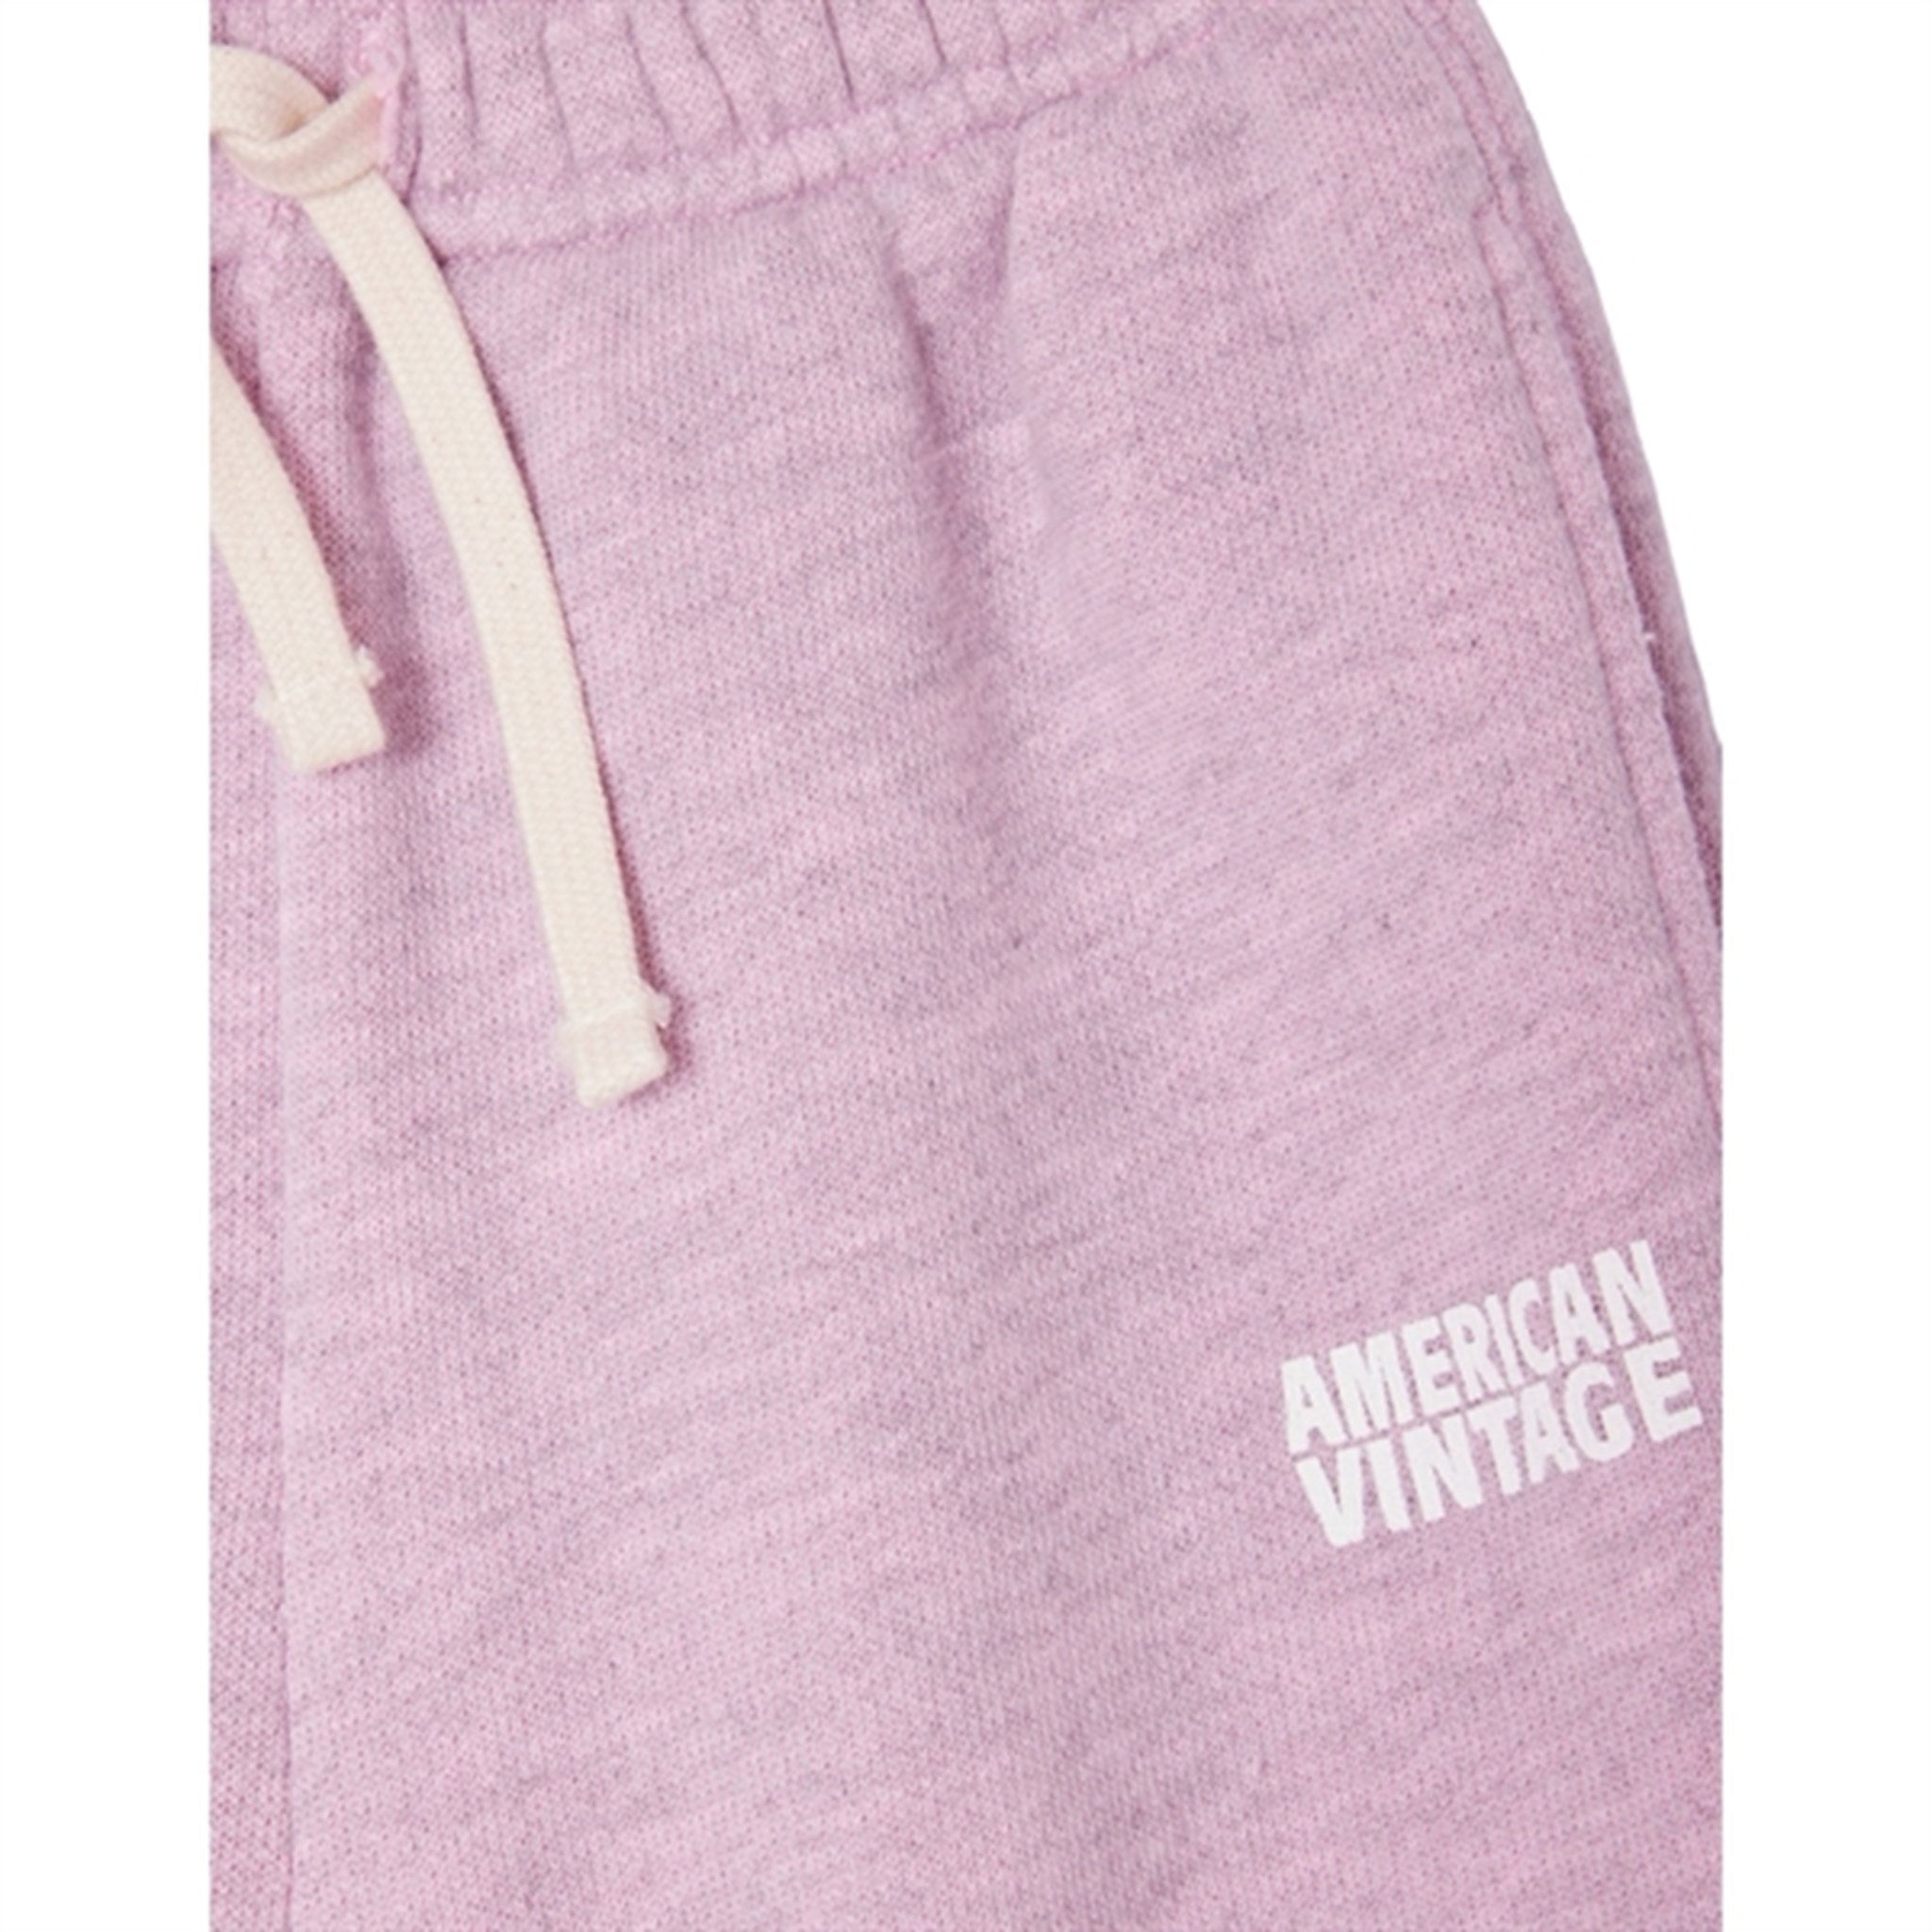 American Vintage Shorts Satin Surteint 2